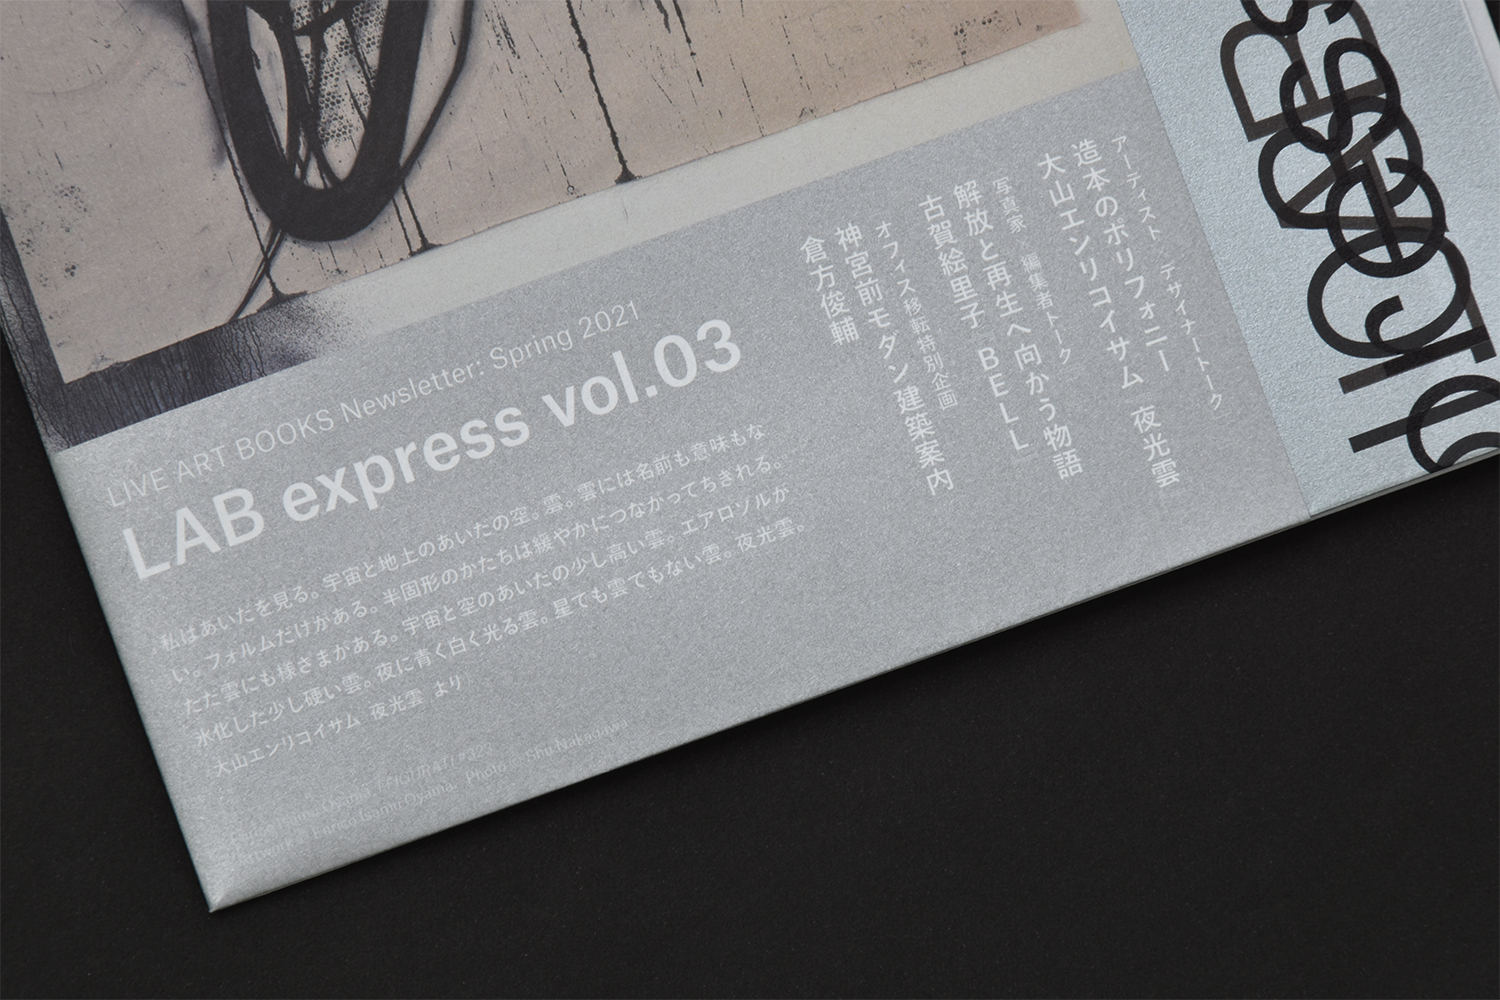 LAB express vol.03